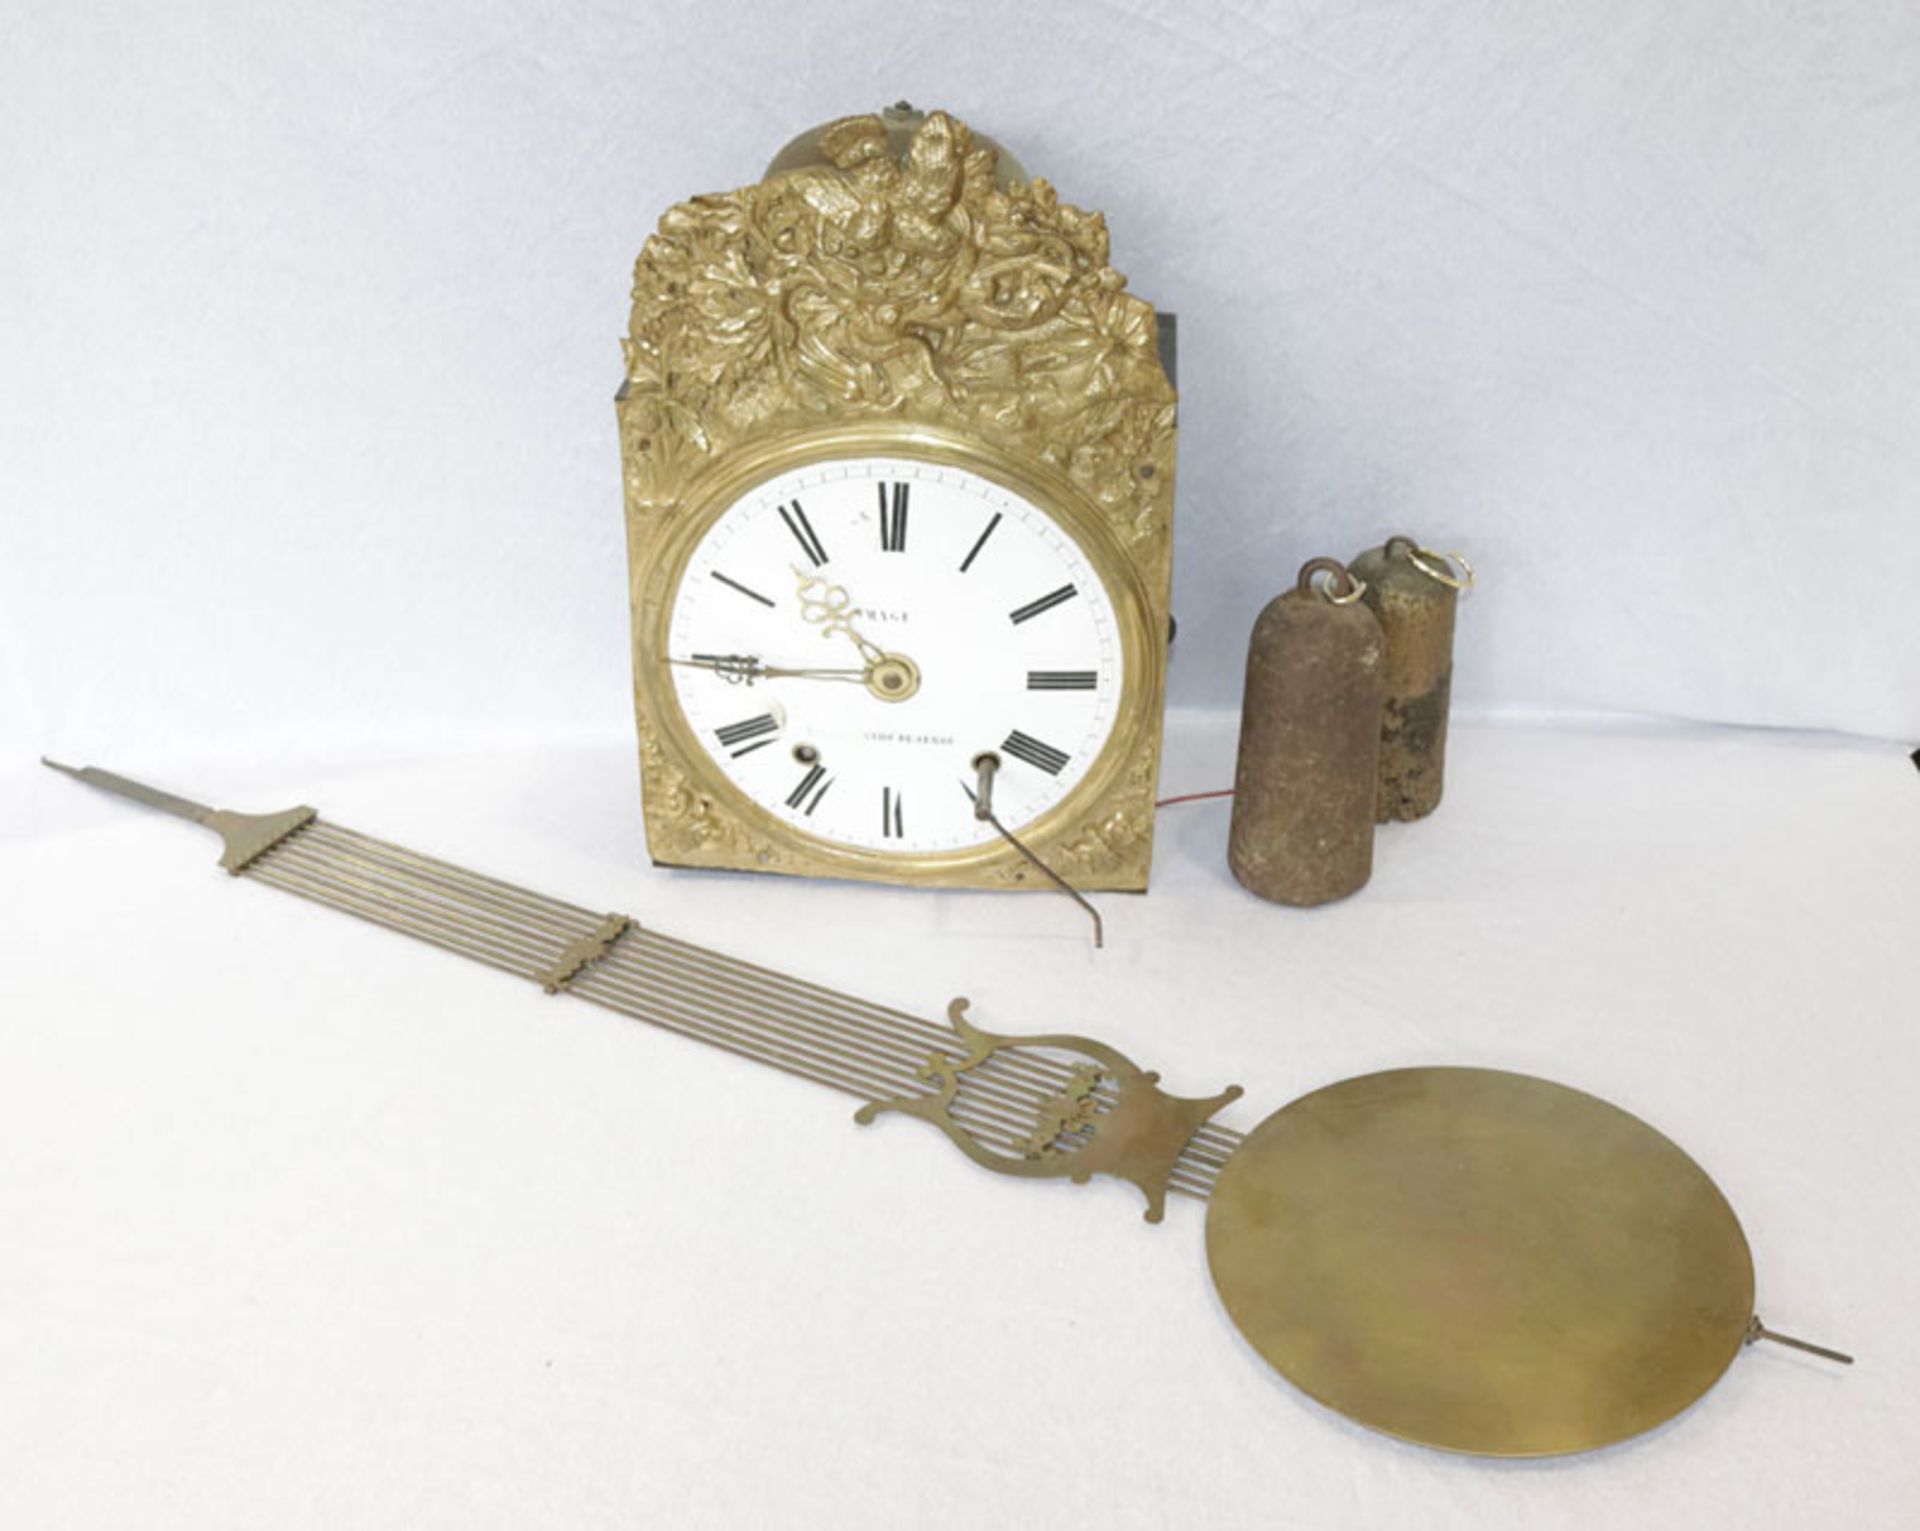 Comptoise Uhr mit geprägtem Messing und Email Zifferblatt, dekorativer Pendel, 2 Gewichte und